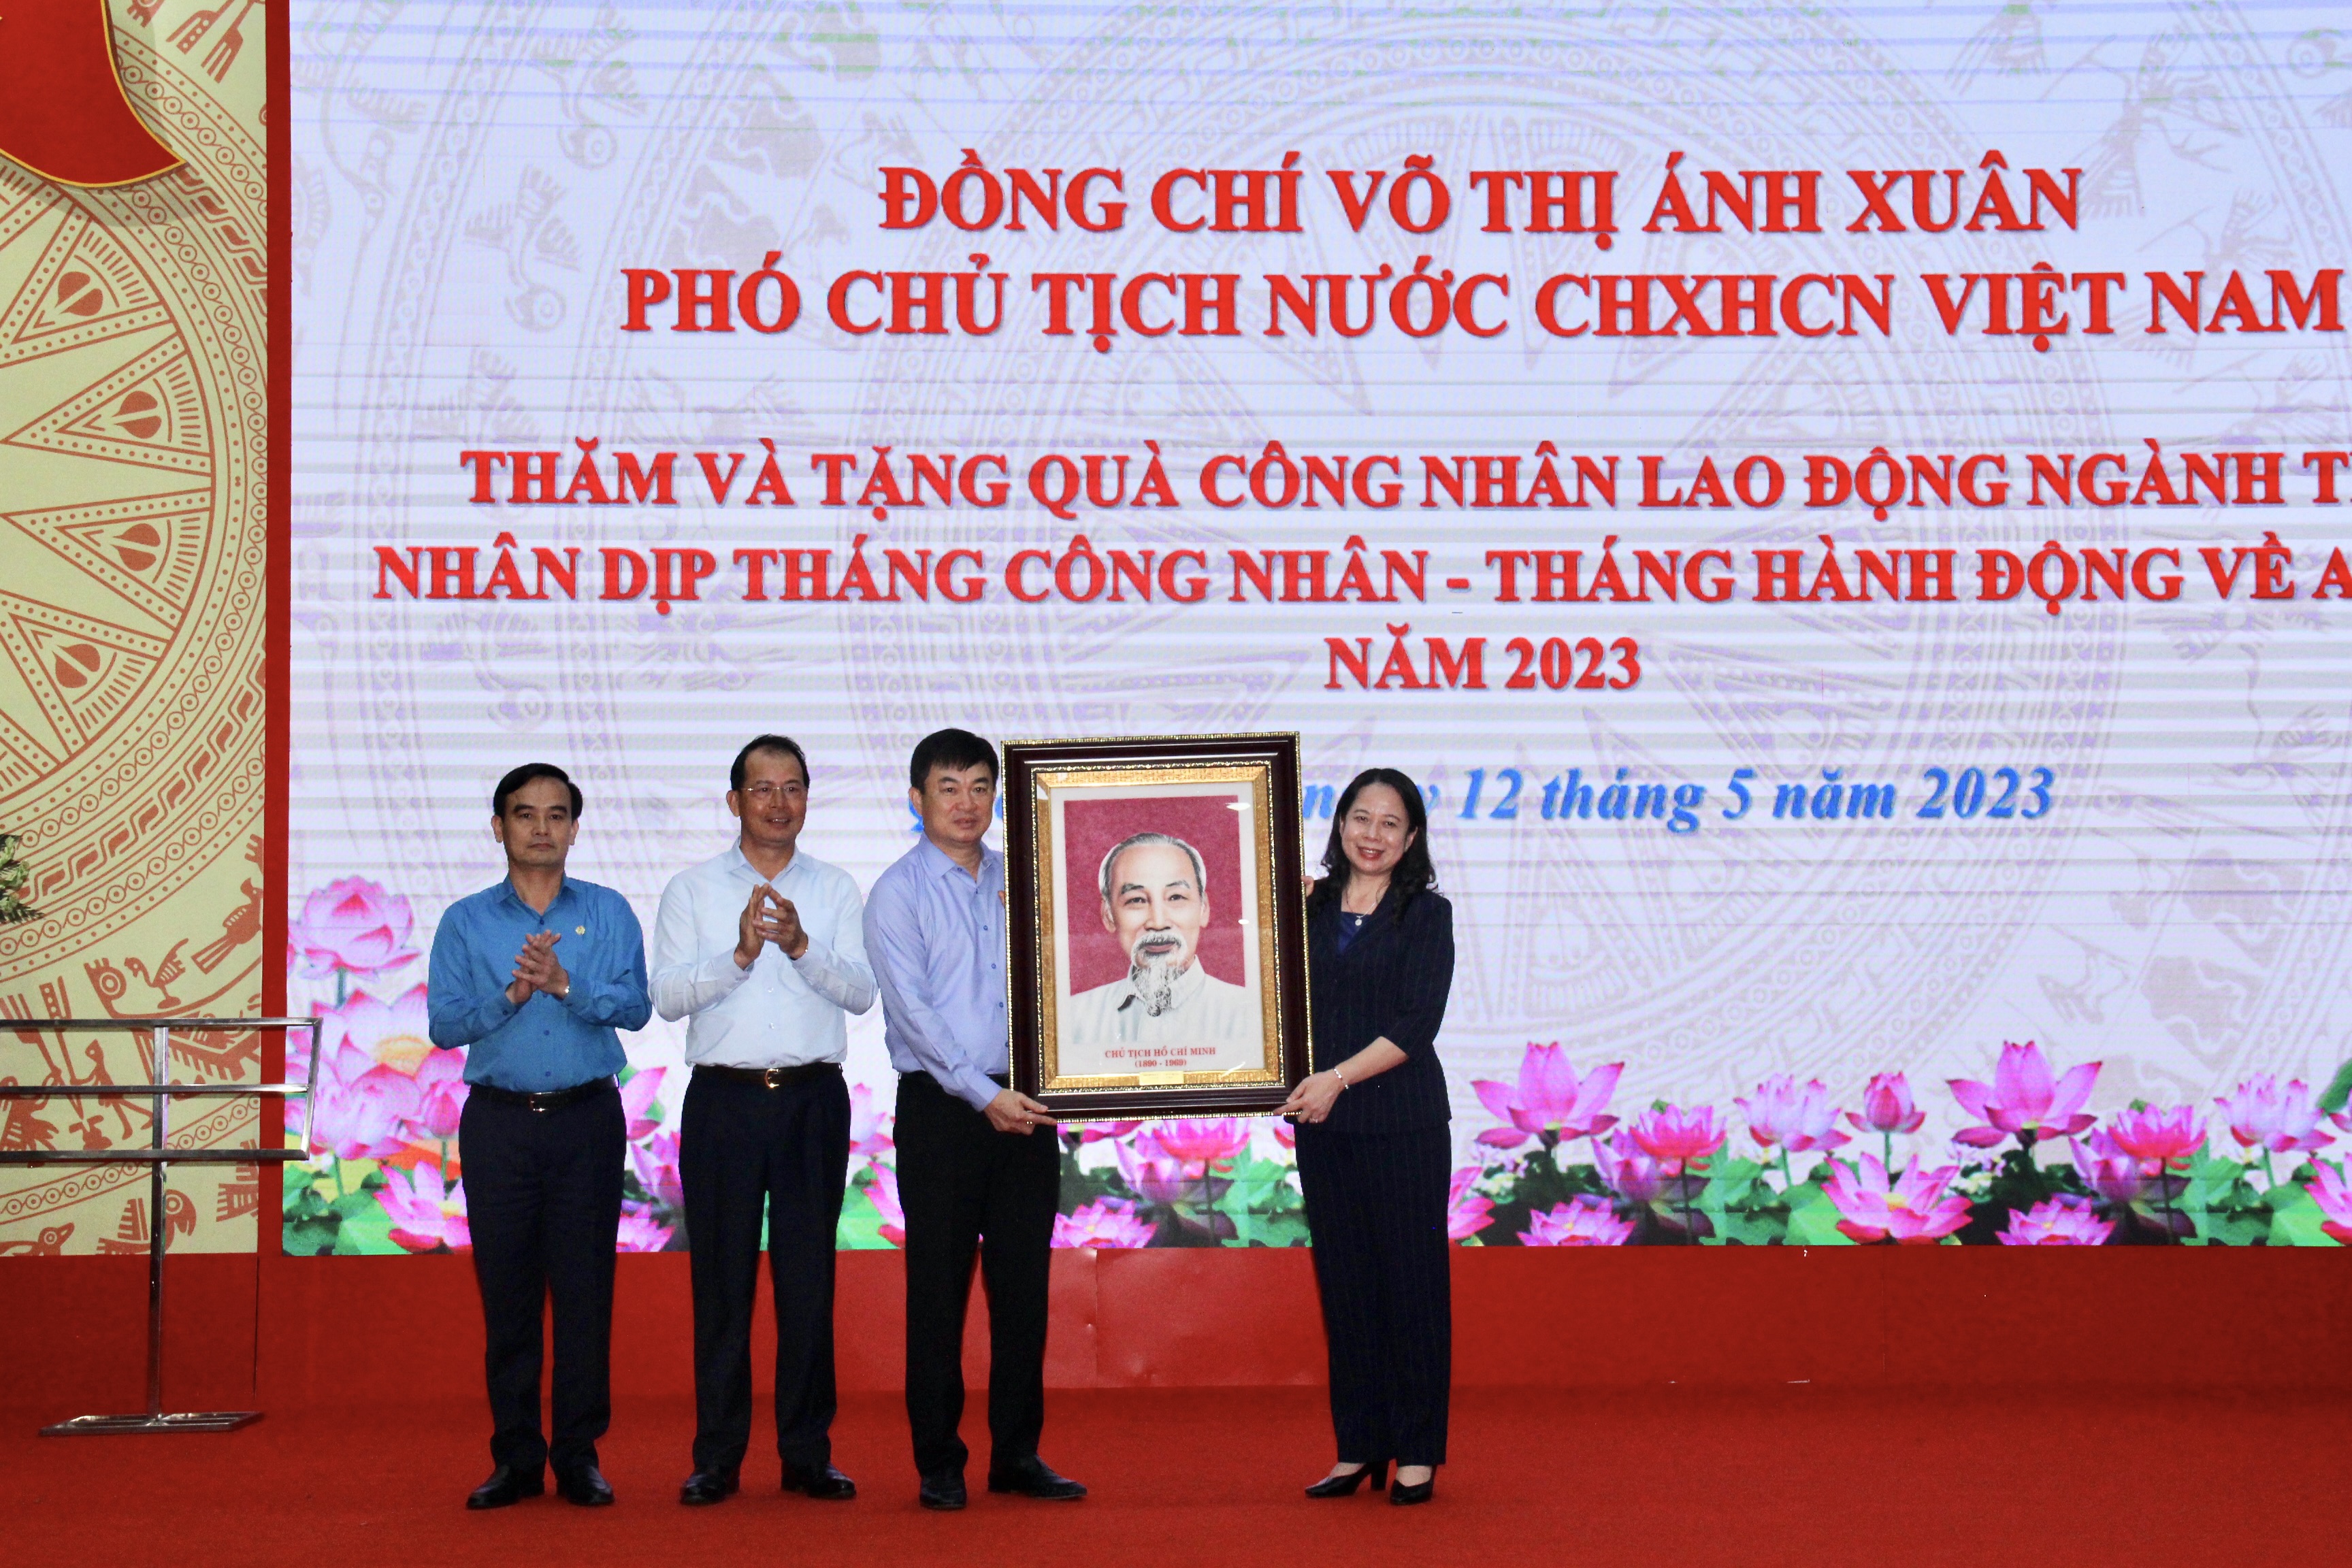 Đội ngũ công nhân lao động ngành Than có vai trò và đóng góp quan trọng đối với sự phát triển kinh tế - xã hội của tỉnh Quảng Ninh và đất nước - Ảnh 4